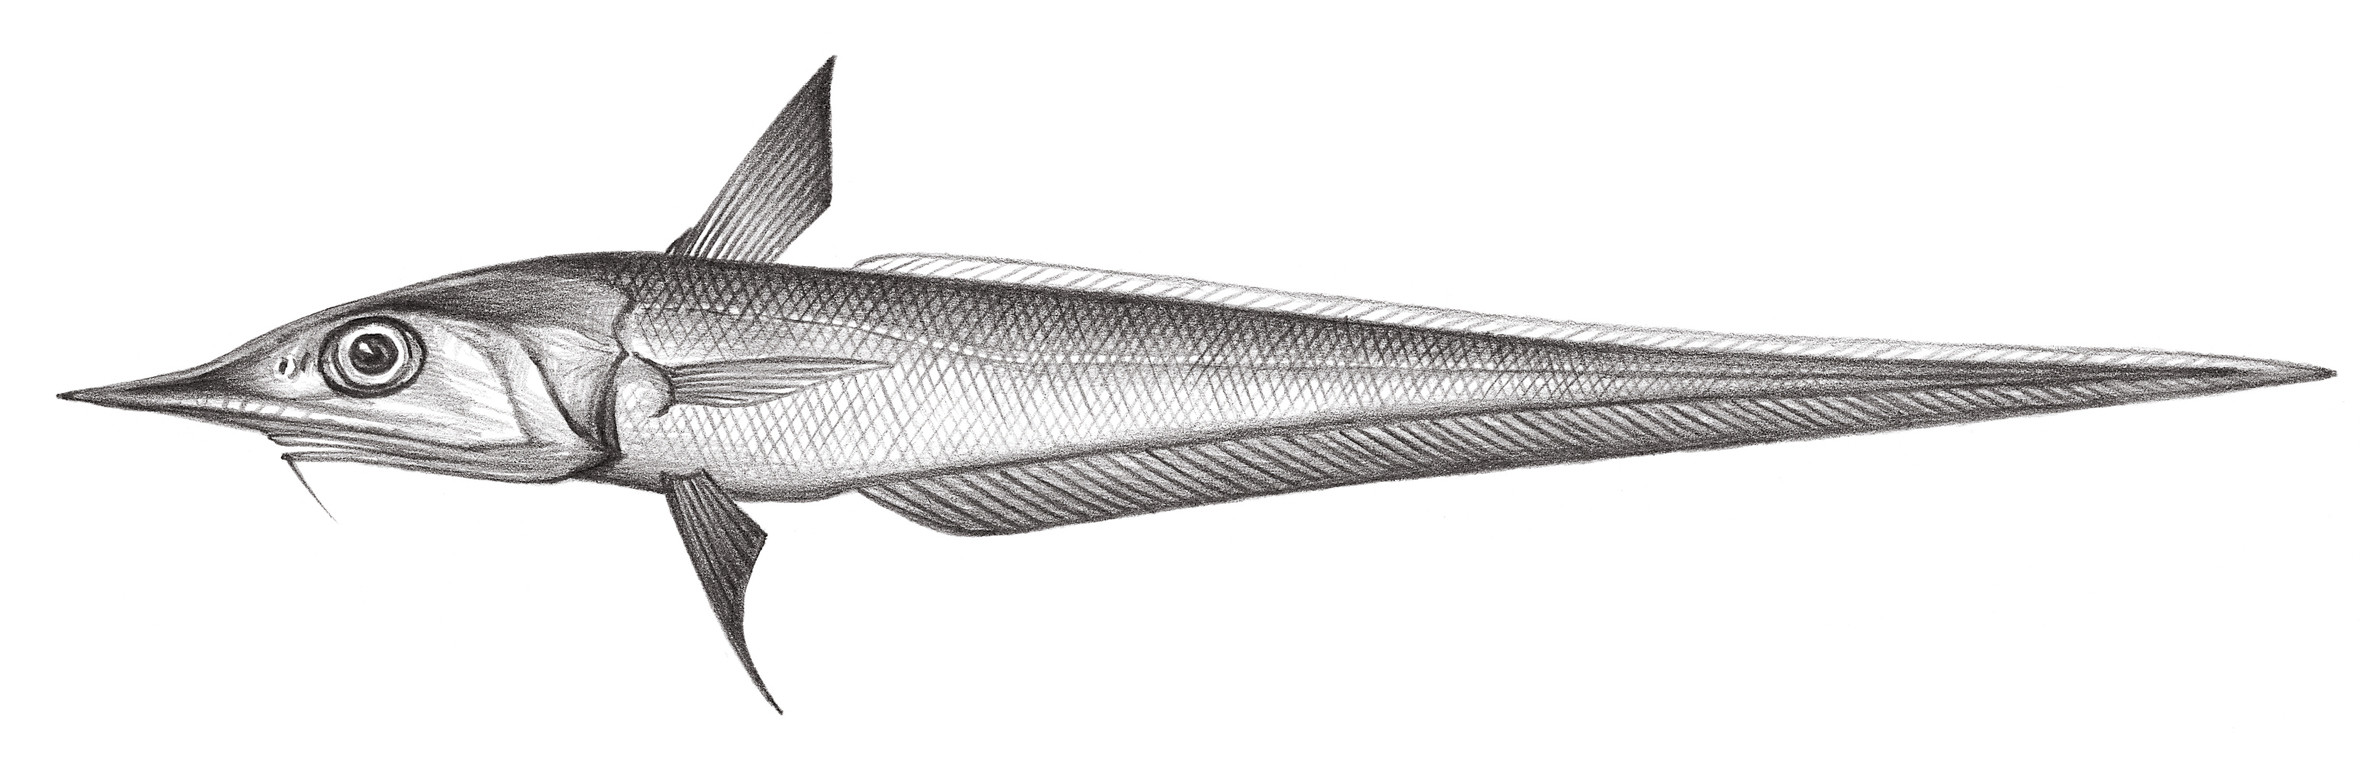 563.	窄腔吻鱈 Caelorinchus leptorhinus Chiou, Iwamoto & Shao, 2002